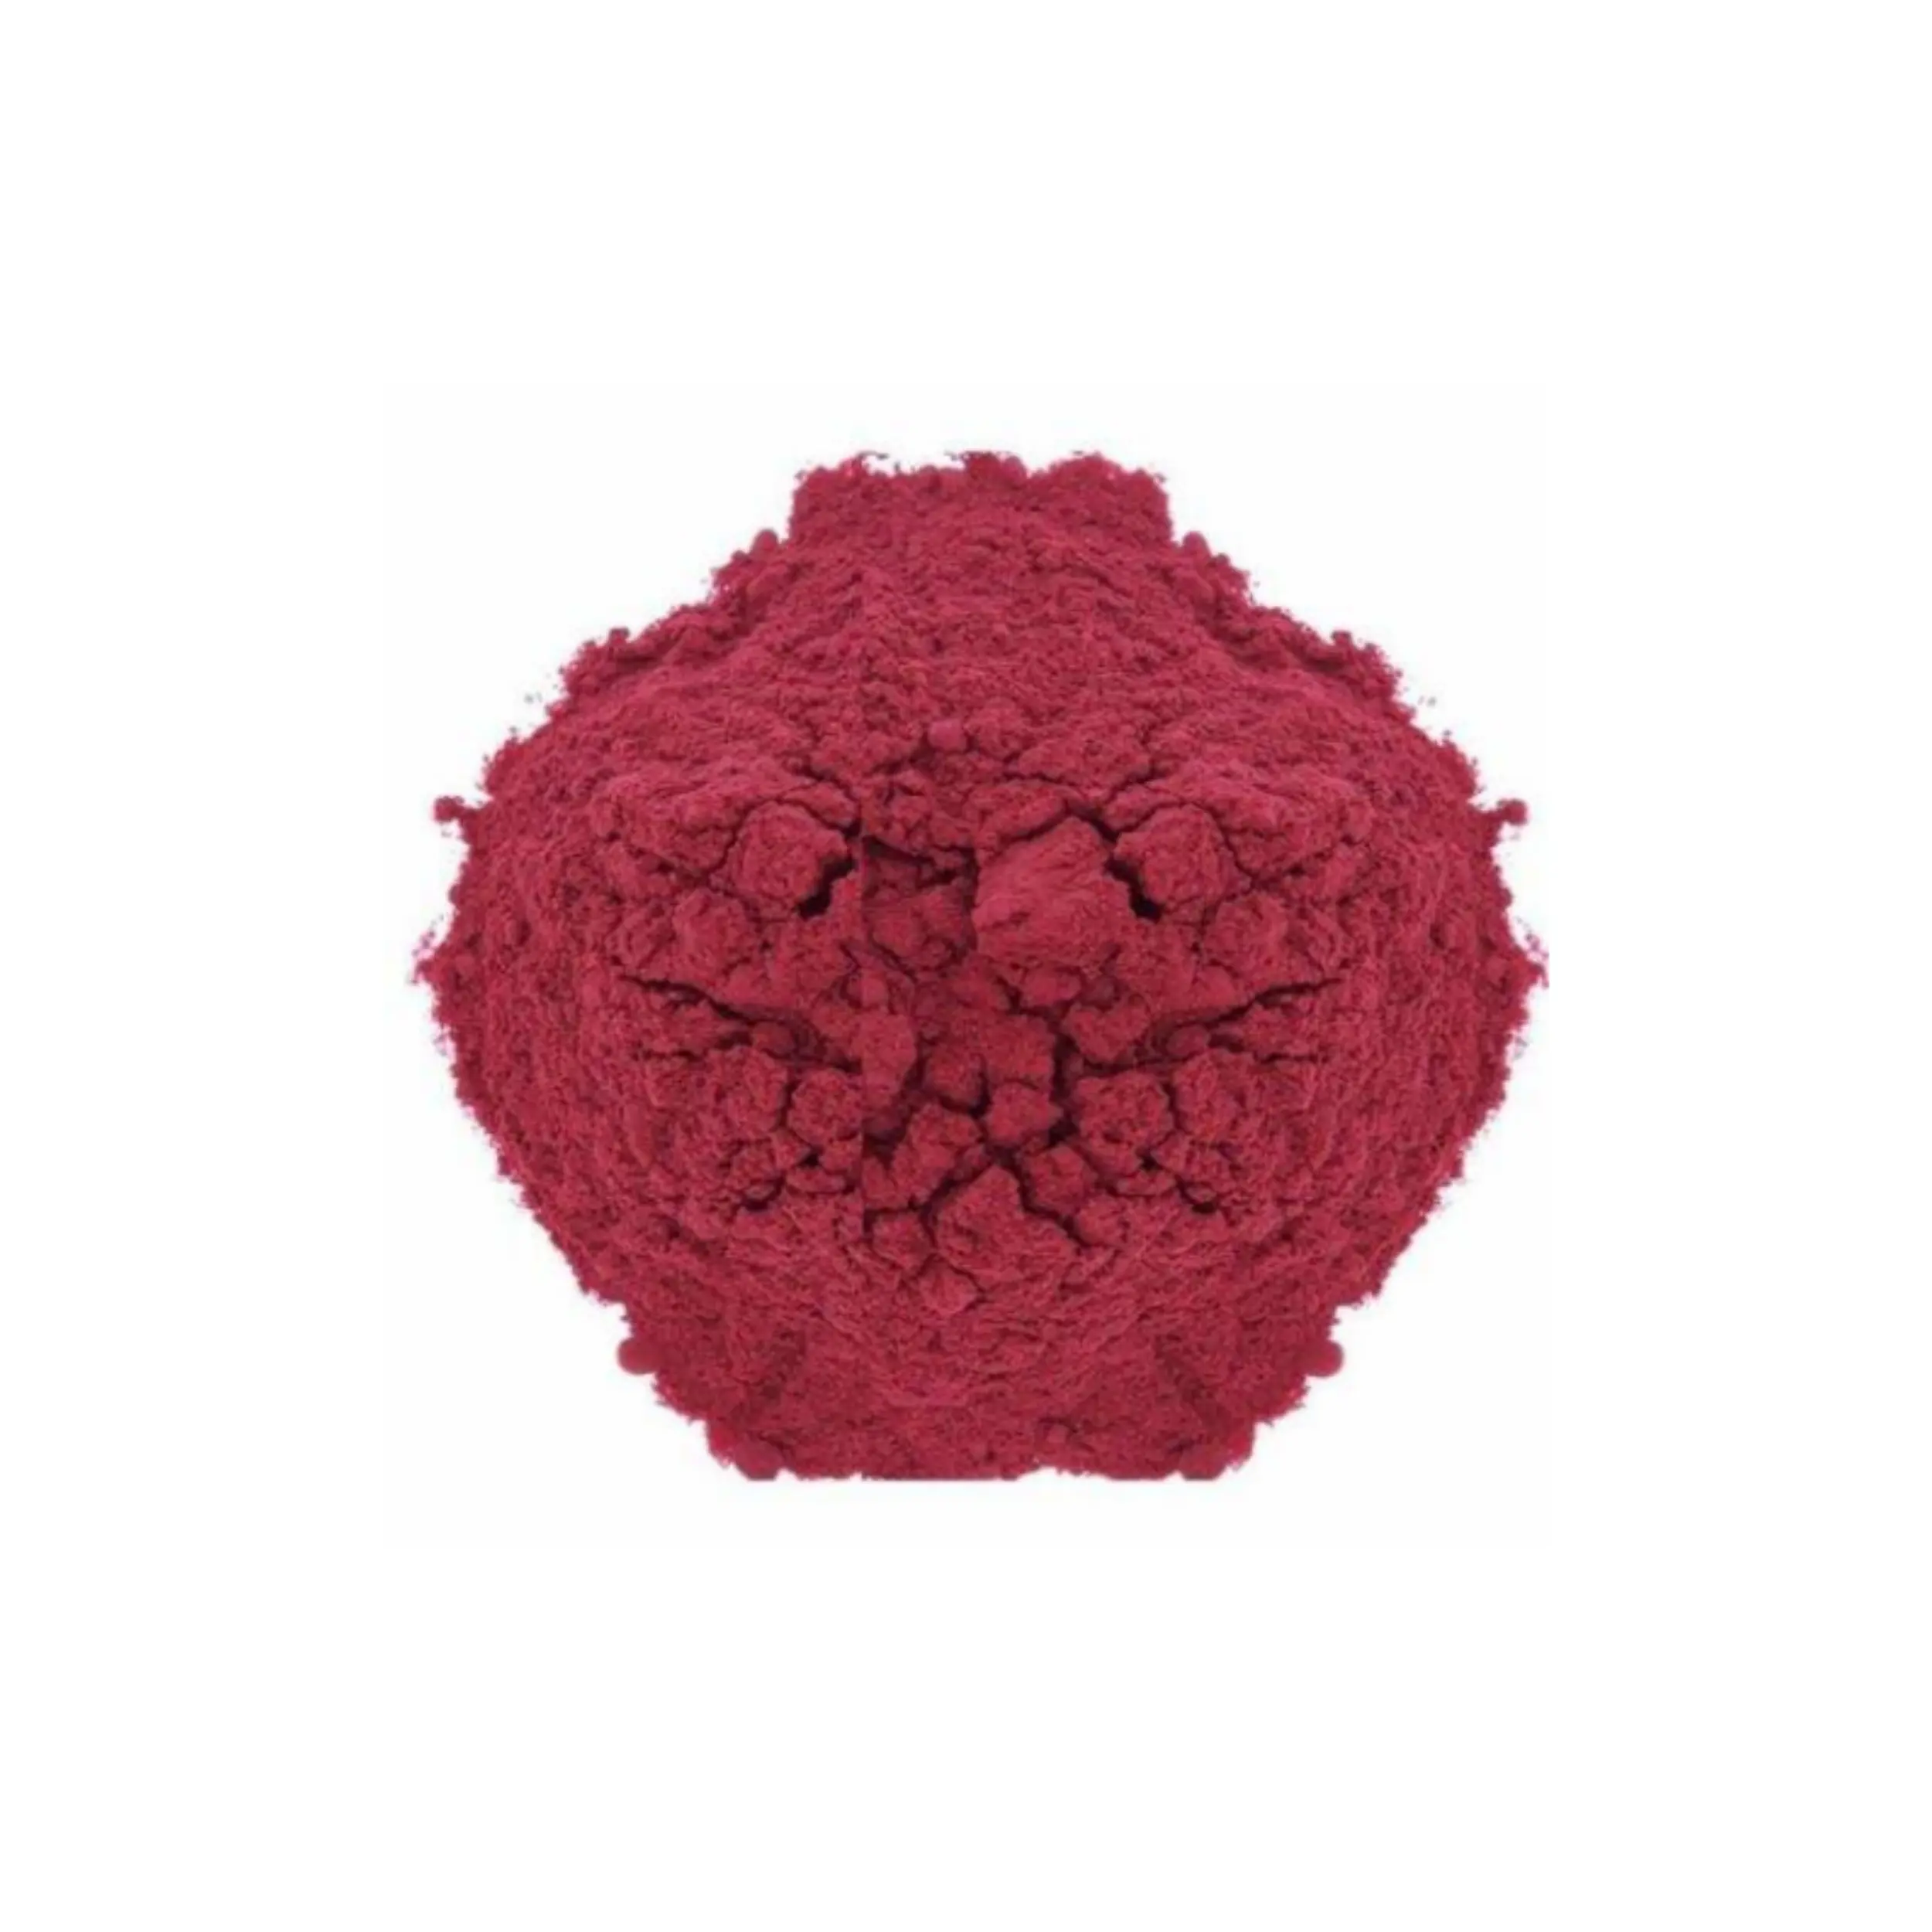 थोक नई नवाचारों विलायक लाल 23 बनानेवाला पदार्थ कैस 85-86-9 के लिए इस्तेमाल किया जा सकता है जो एक किस्म राल के रंग